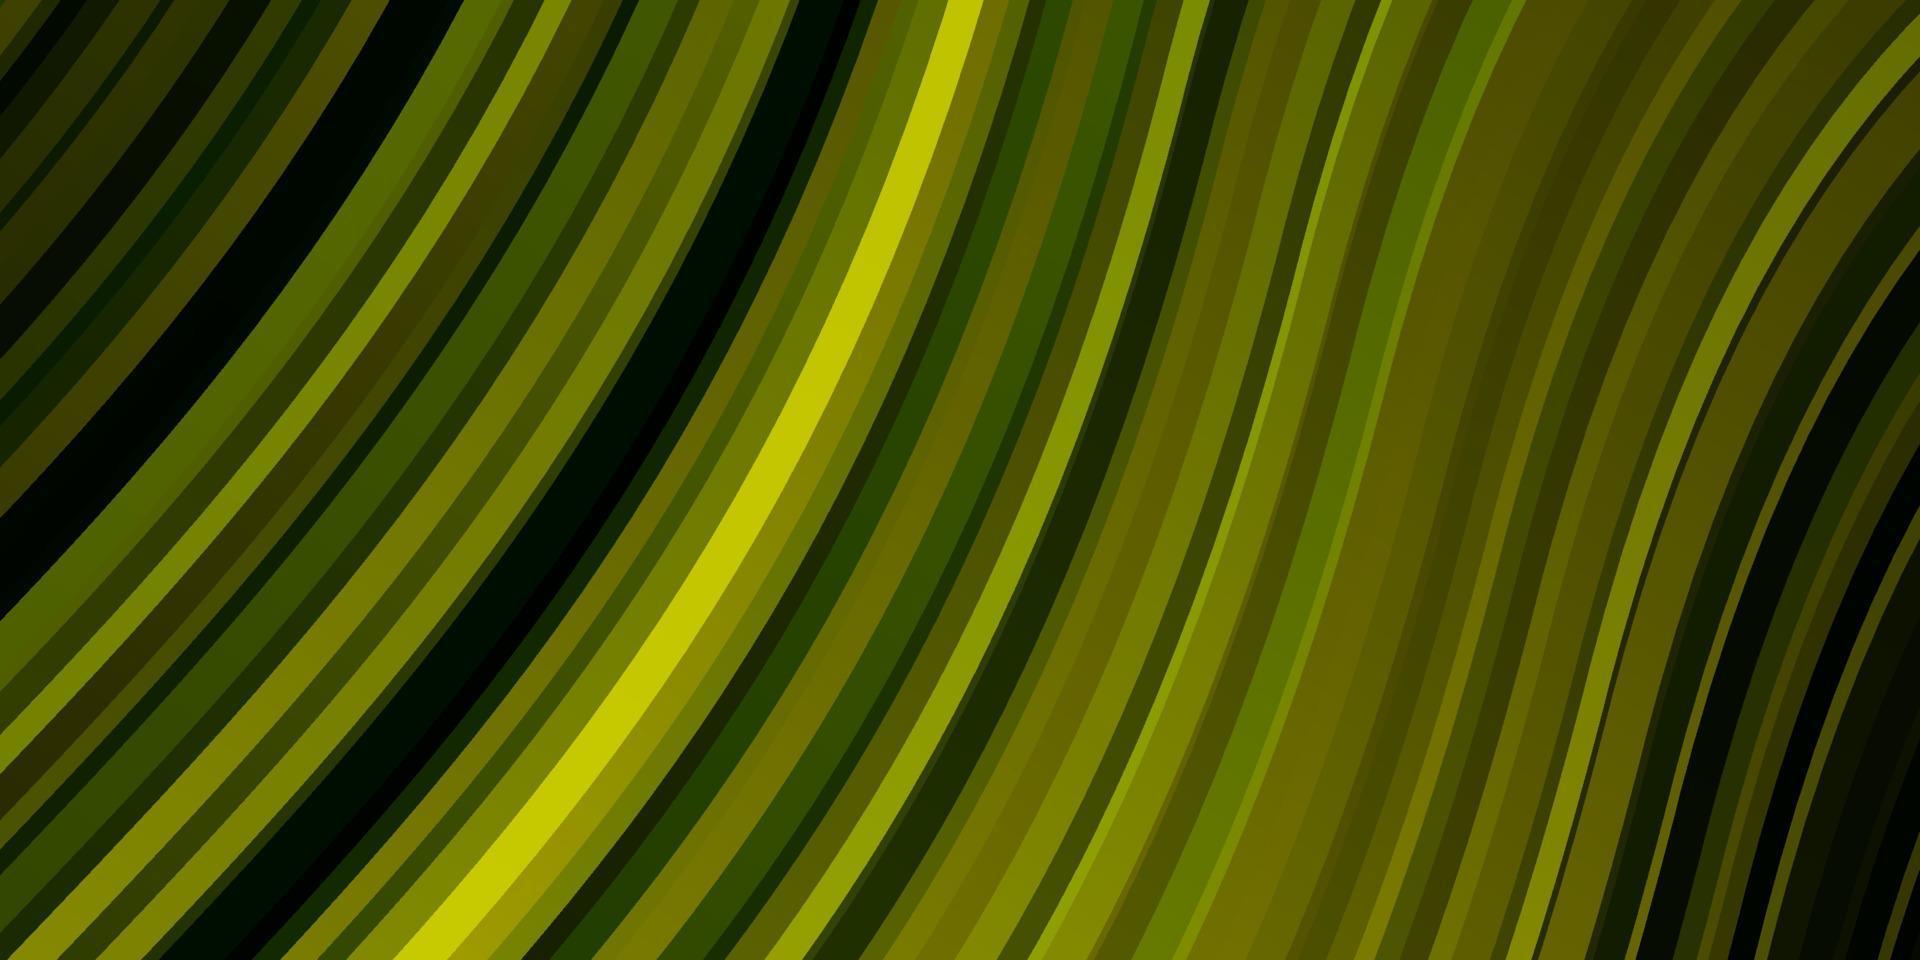 ljusgrön, gul vektorlayout med cirkelbåge. vektor